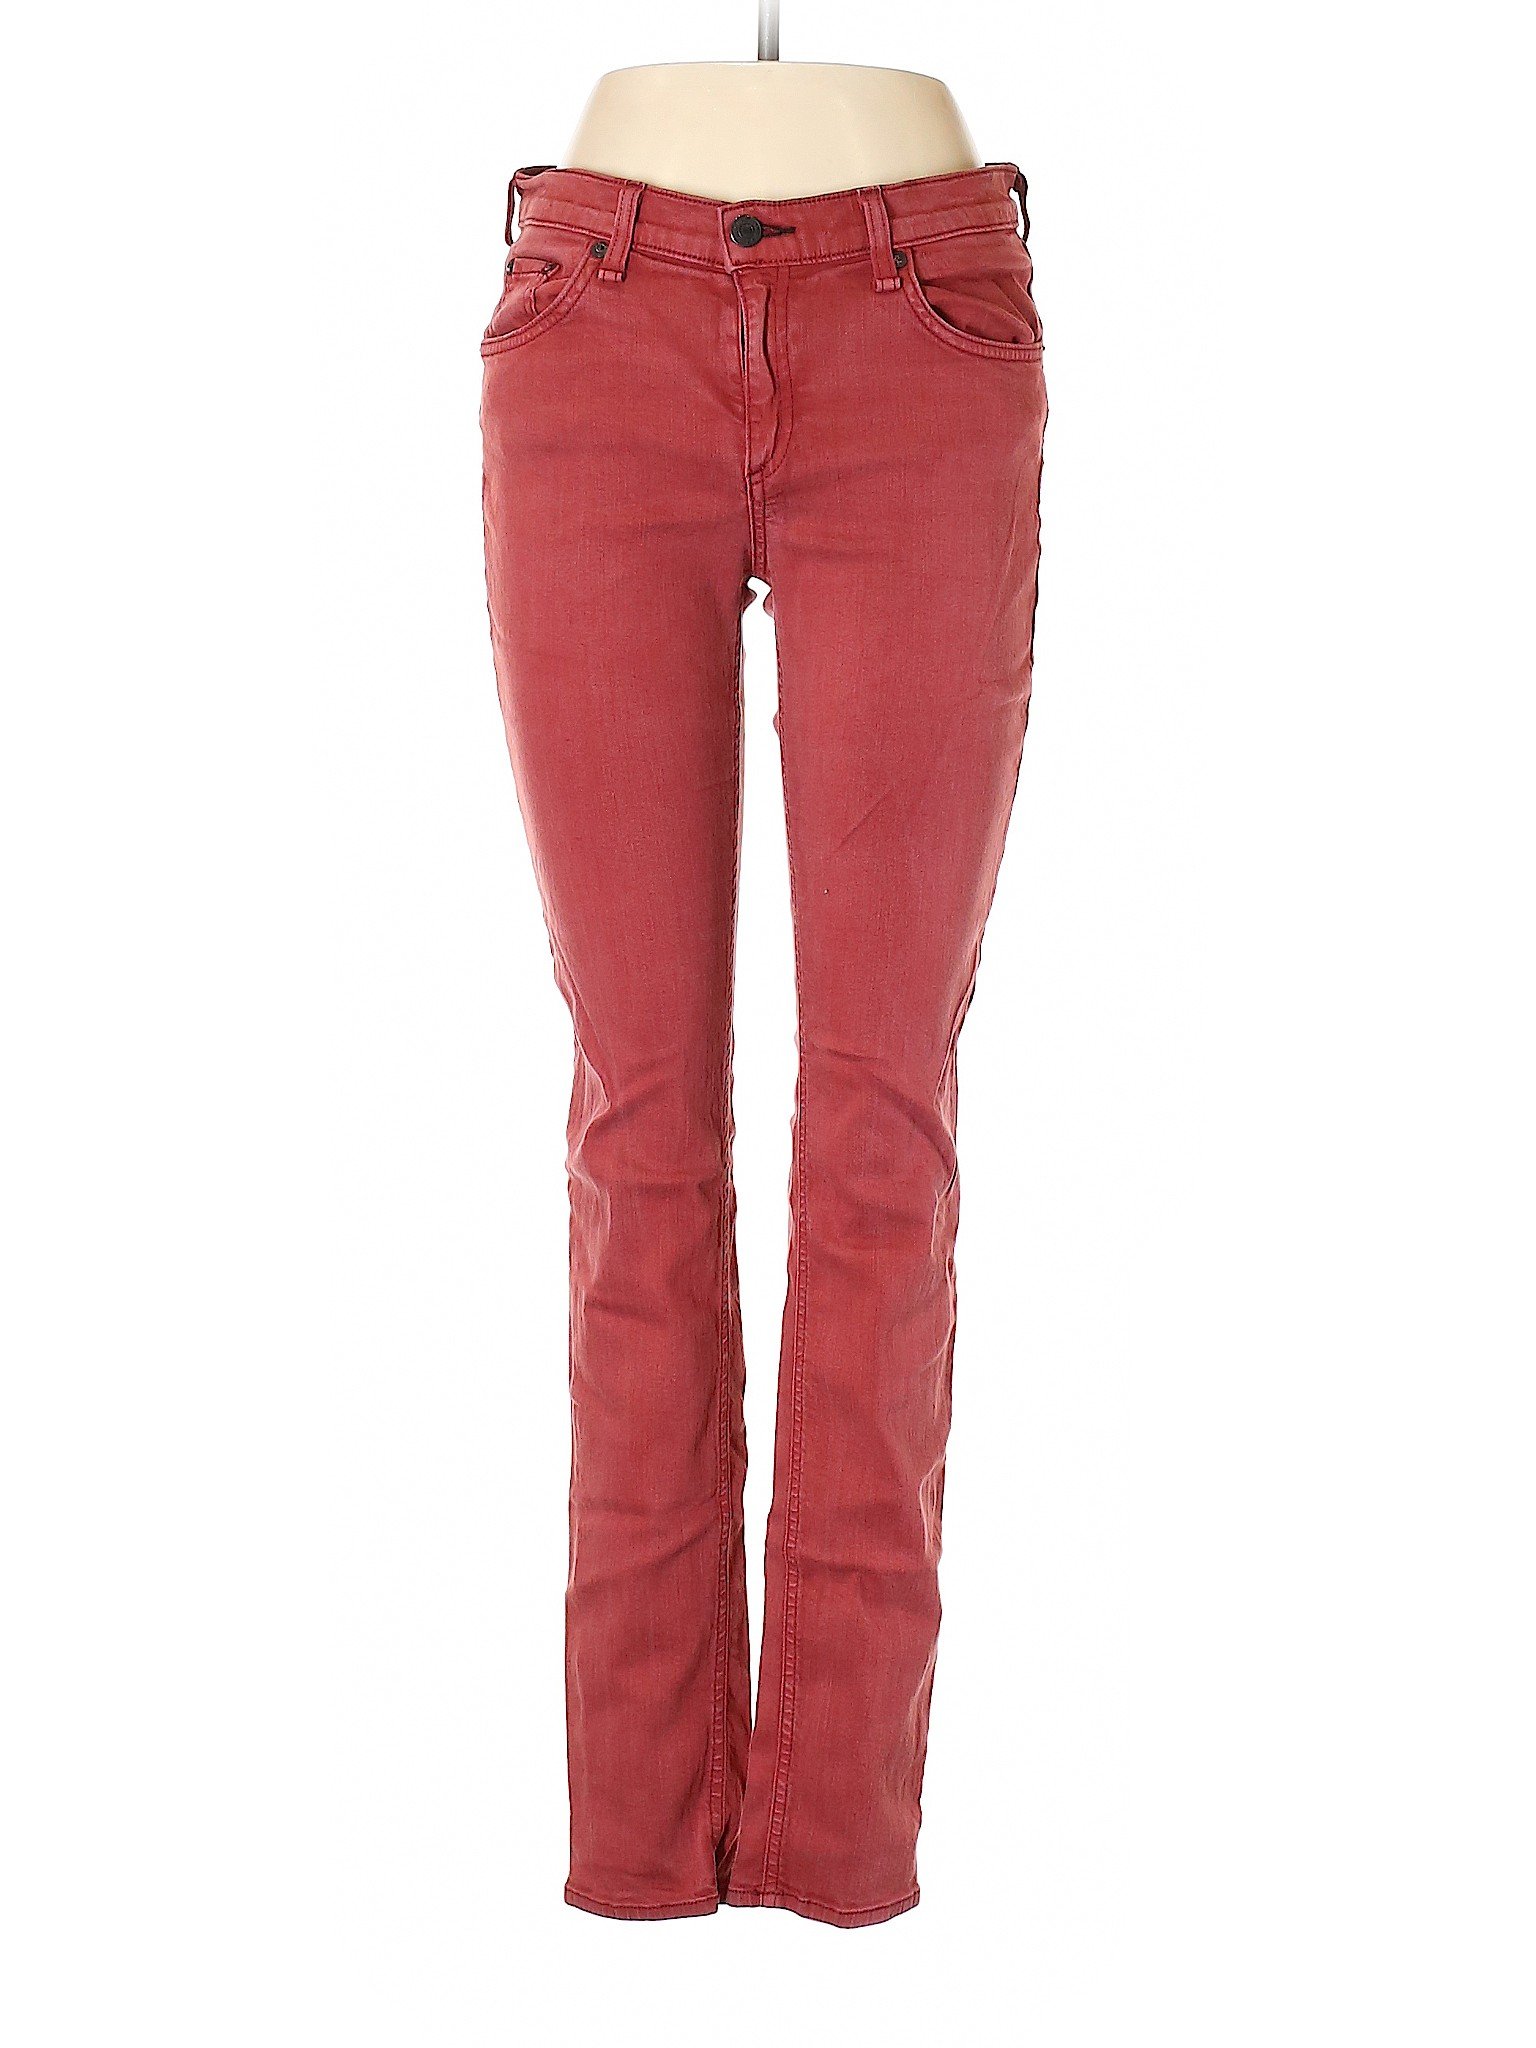 Rag & Bone Women Red Jeans 29W | eBay